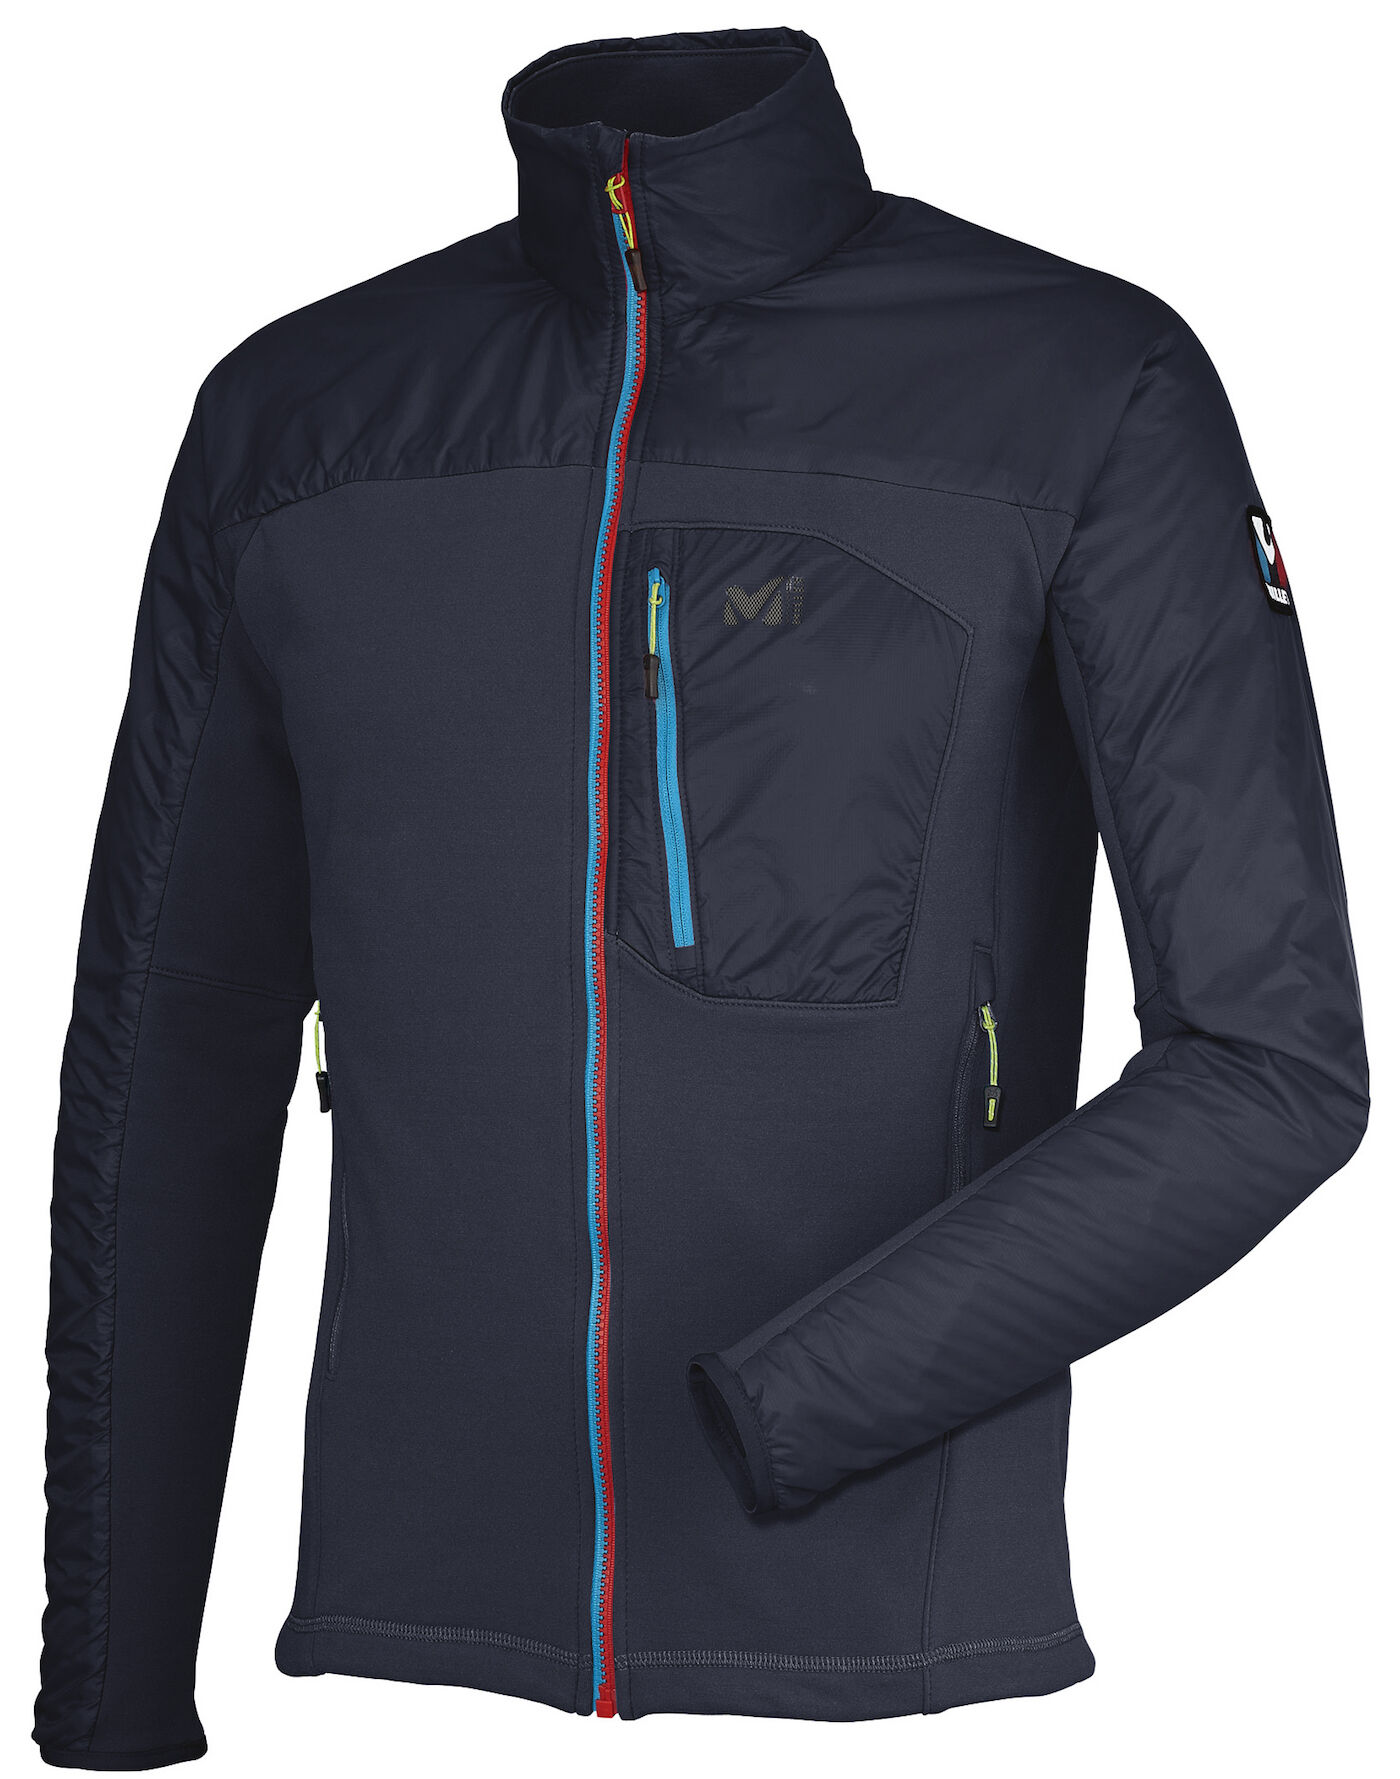 Millet - St Moritz Jkt 2.0 M - Ski jacket - Men's